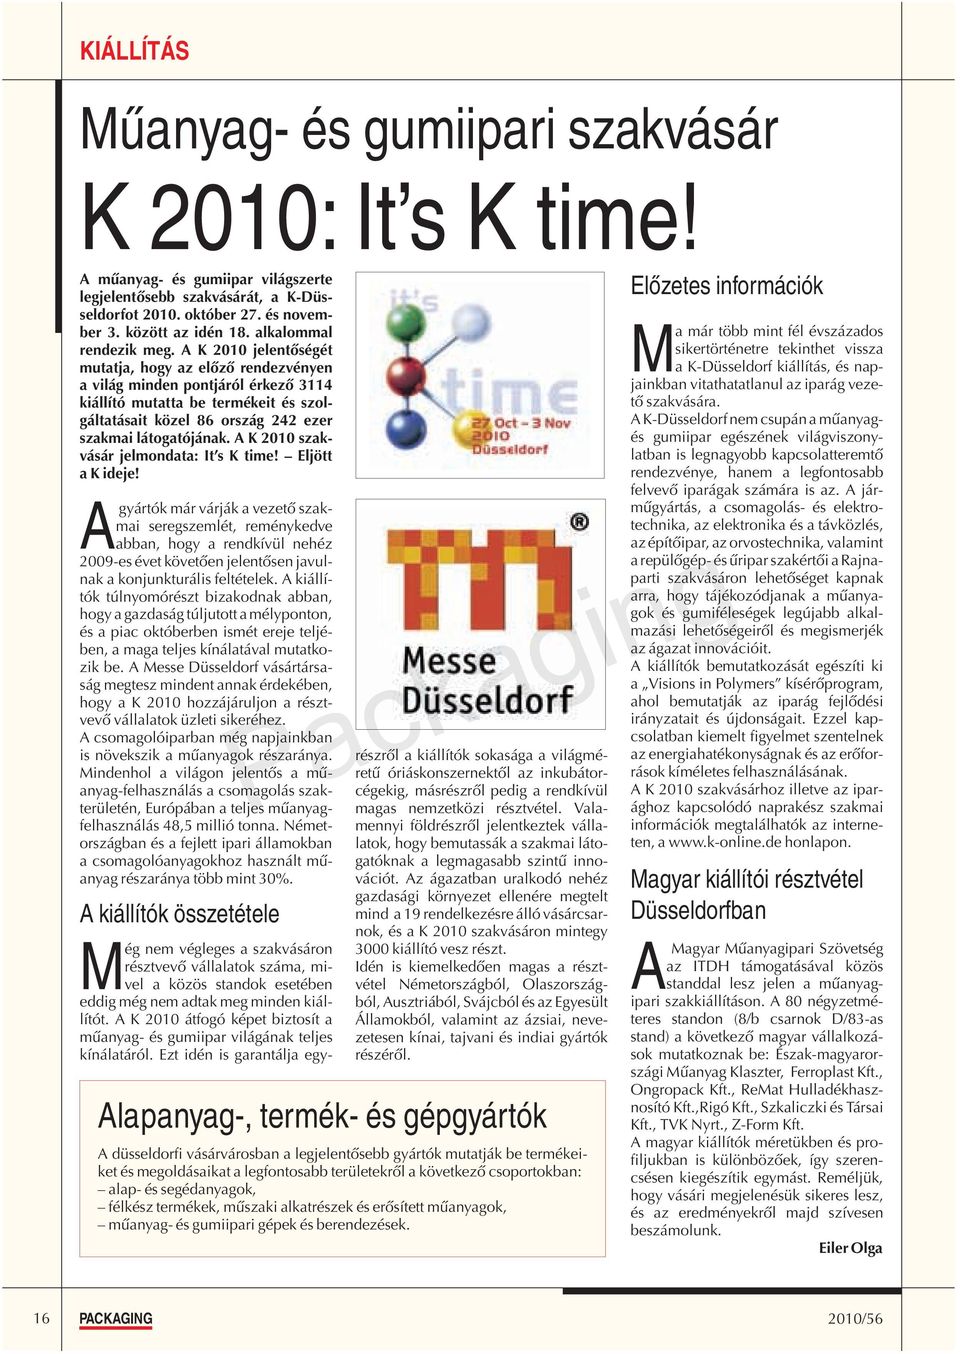 A K 2010 szakvásár jelmondata: It s K time! Eljött a K ideje!